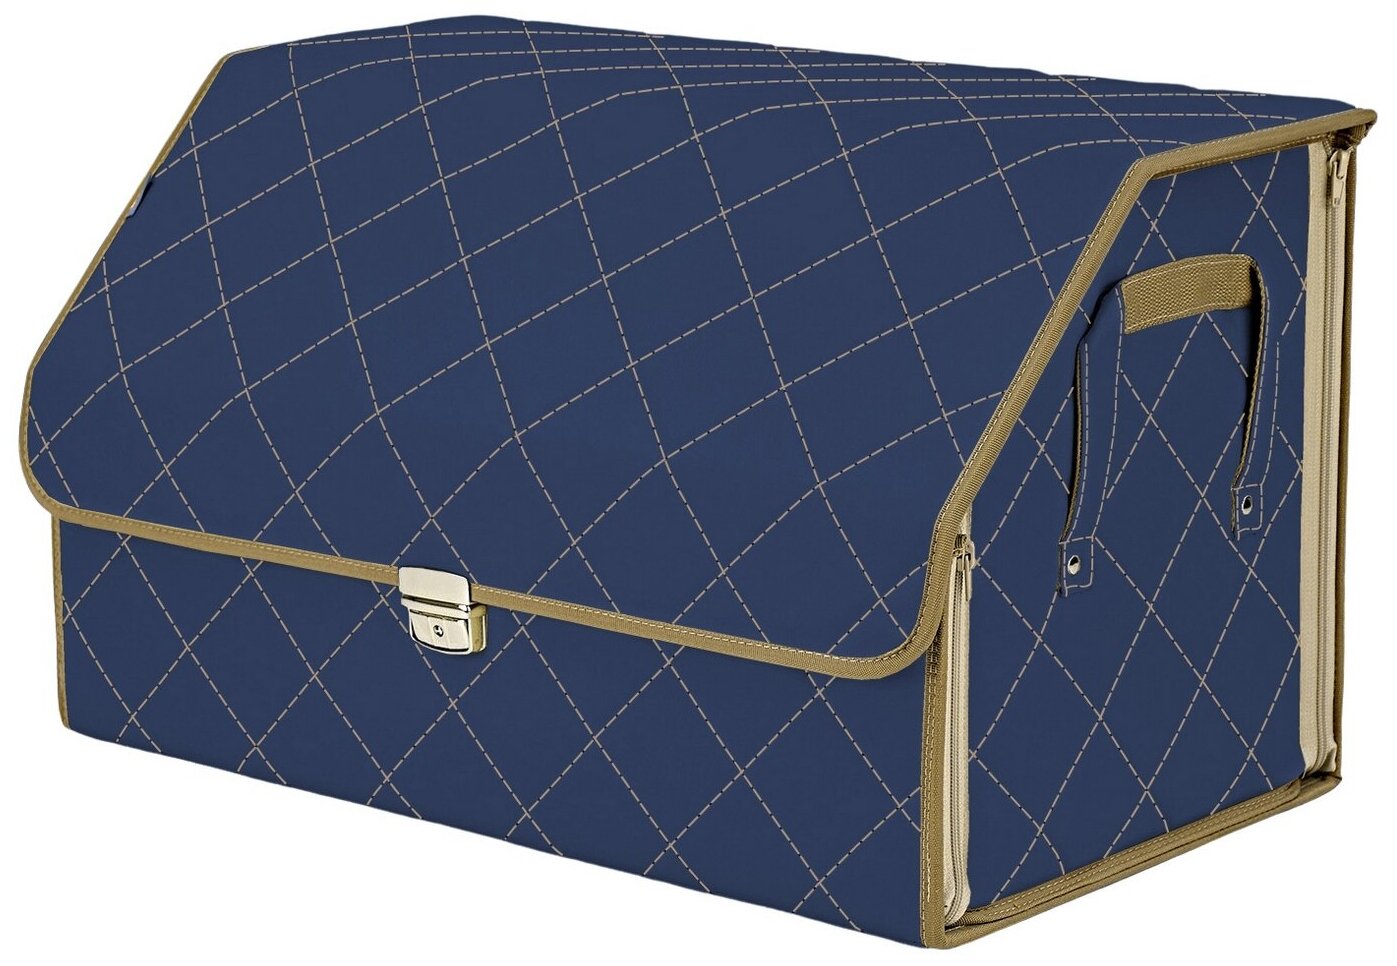 Органайзер-саквояж в багажник "Союз Премиум" (размер XL). Цвет: синий с бежевой прострочкой Ромб.